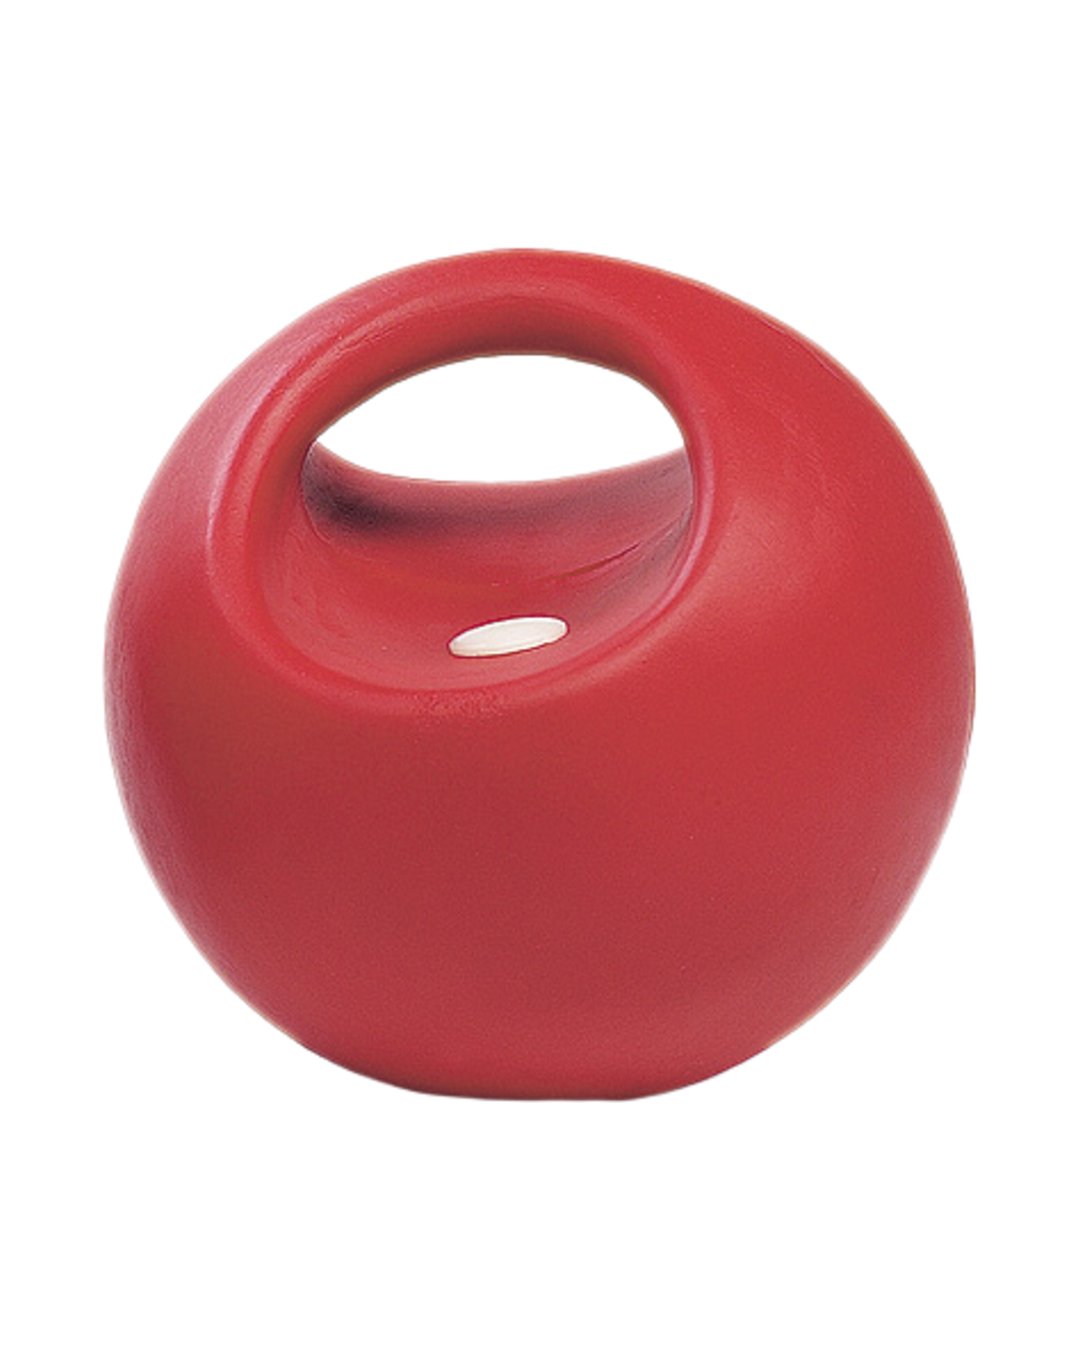 Spielball mit Griff Rot 16,5 cm